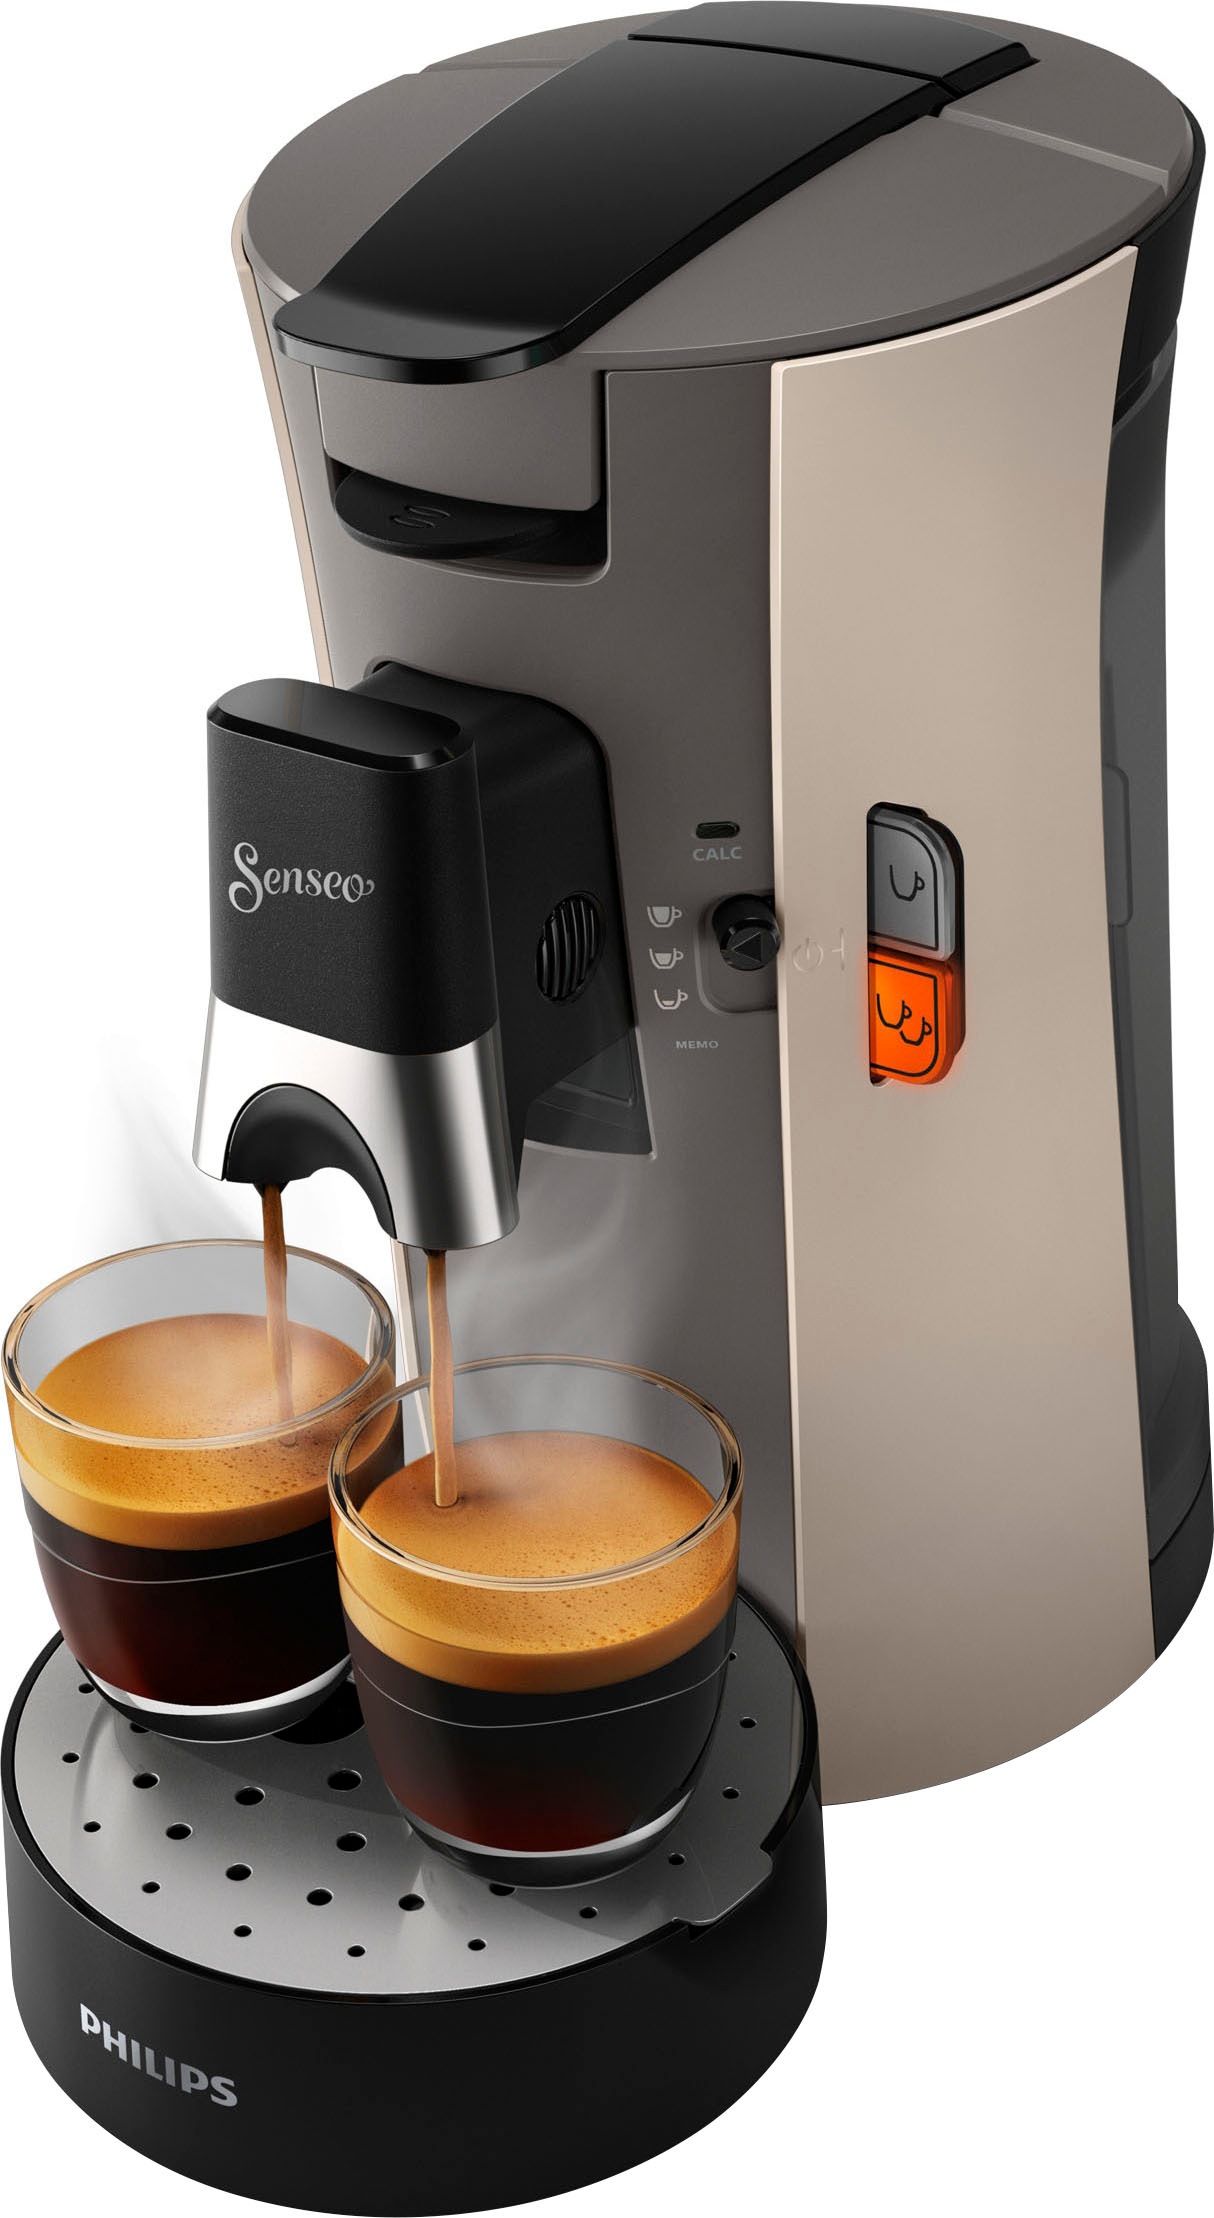 Philips Senseo Kaffeepadmaschine »Select inkl. im | € auf Wert von CSA240/30«, Gratis-Zugaben Raten UVP BAUR 14